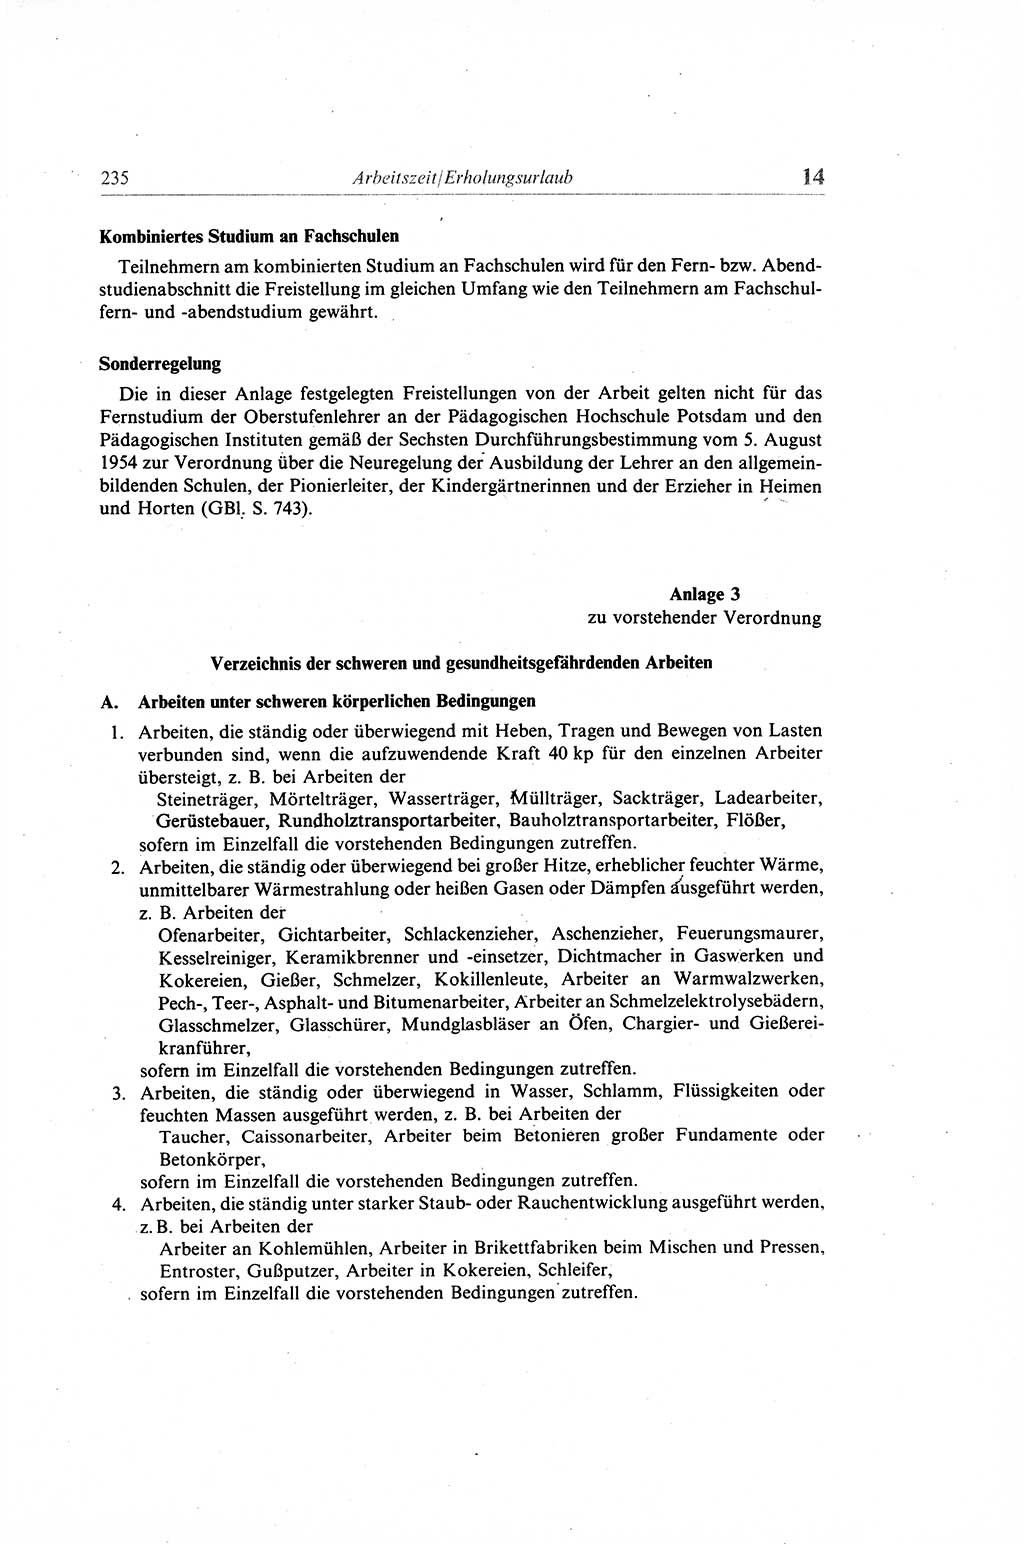 Gesetzbuch der Arbeit (GBA) und andere ausgewählte rechtliche Bestimmungen [Deutsche Demokratische Republik (DDR)] 1968, Seite 235 (GBA DDR 1968, S. 235)